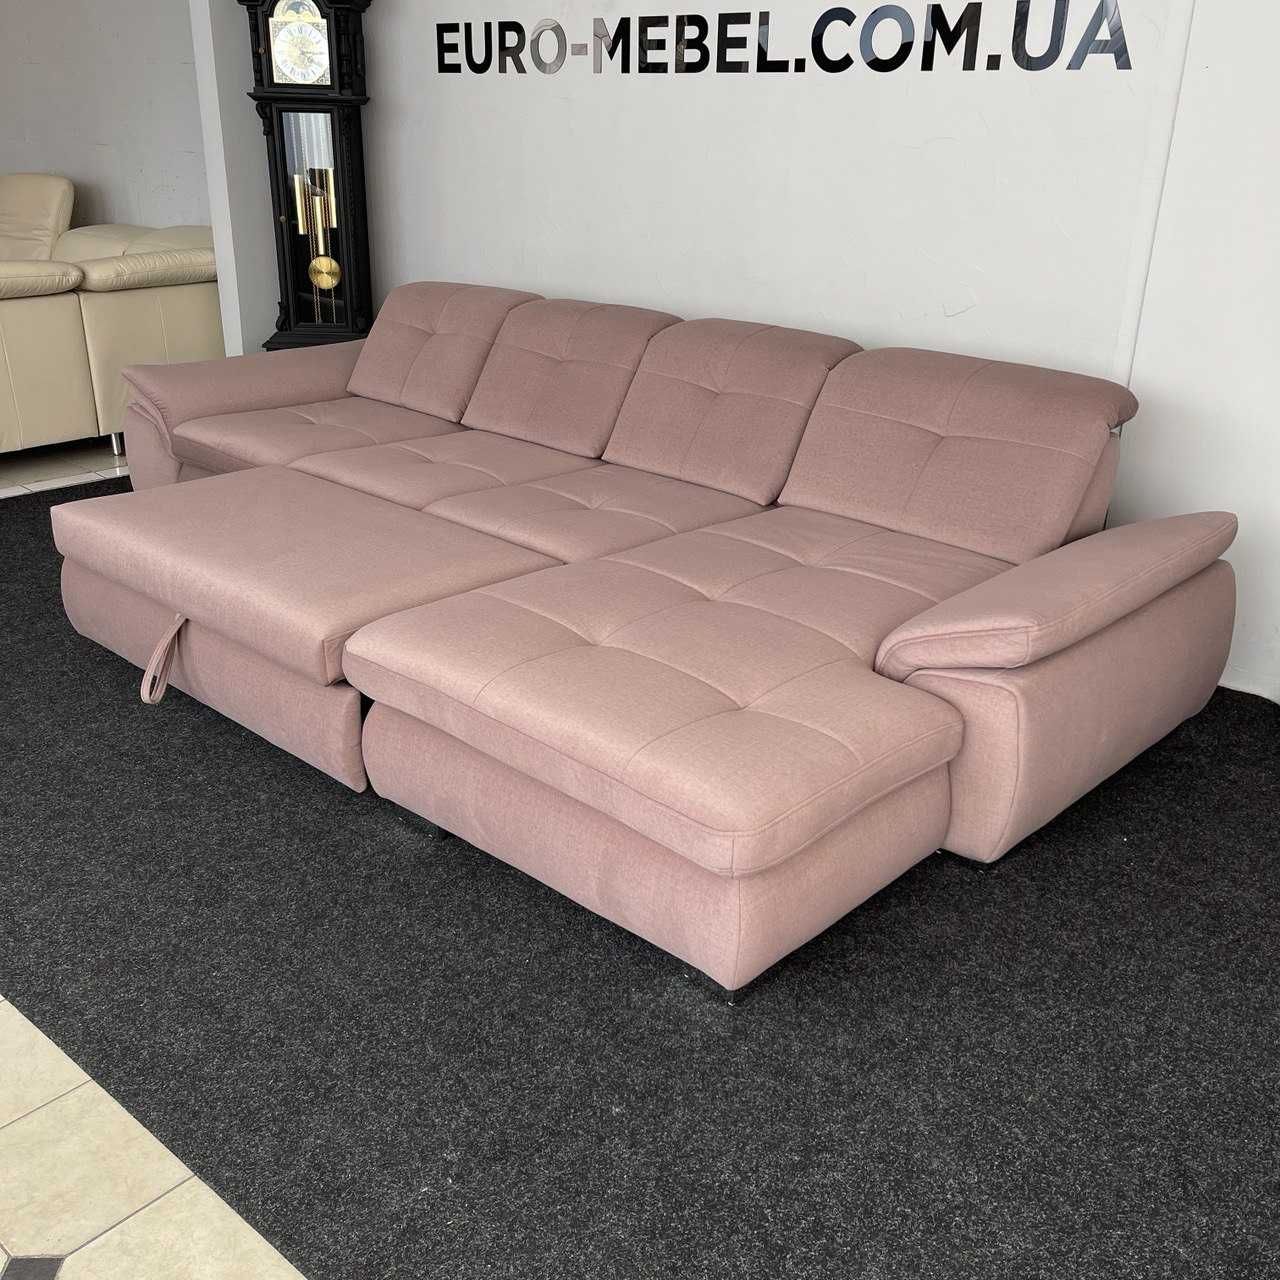 Новий диван, м'який куток